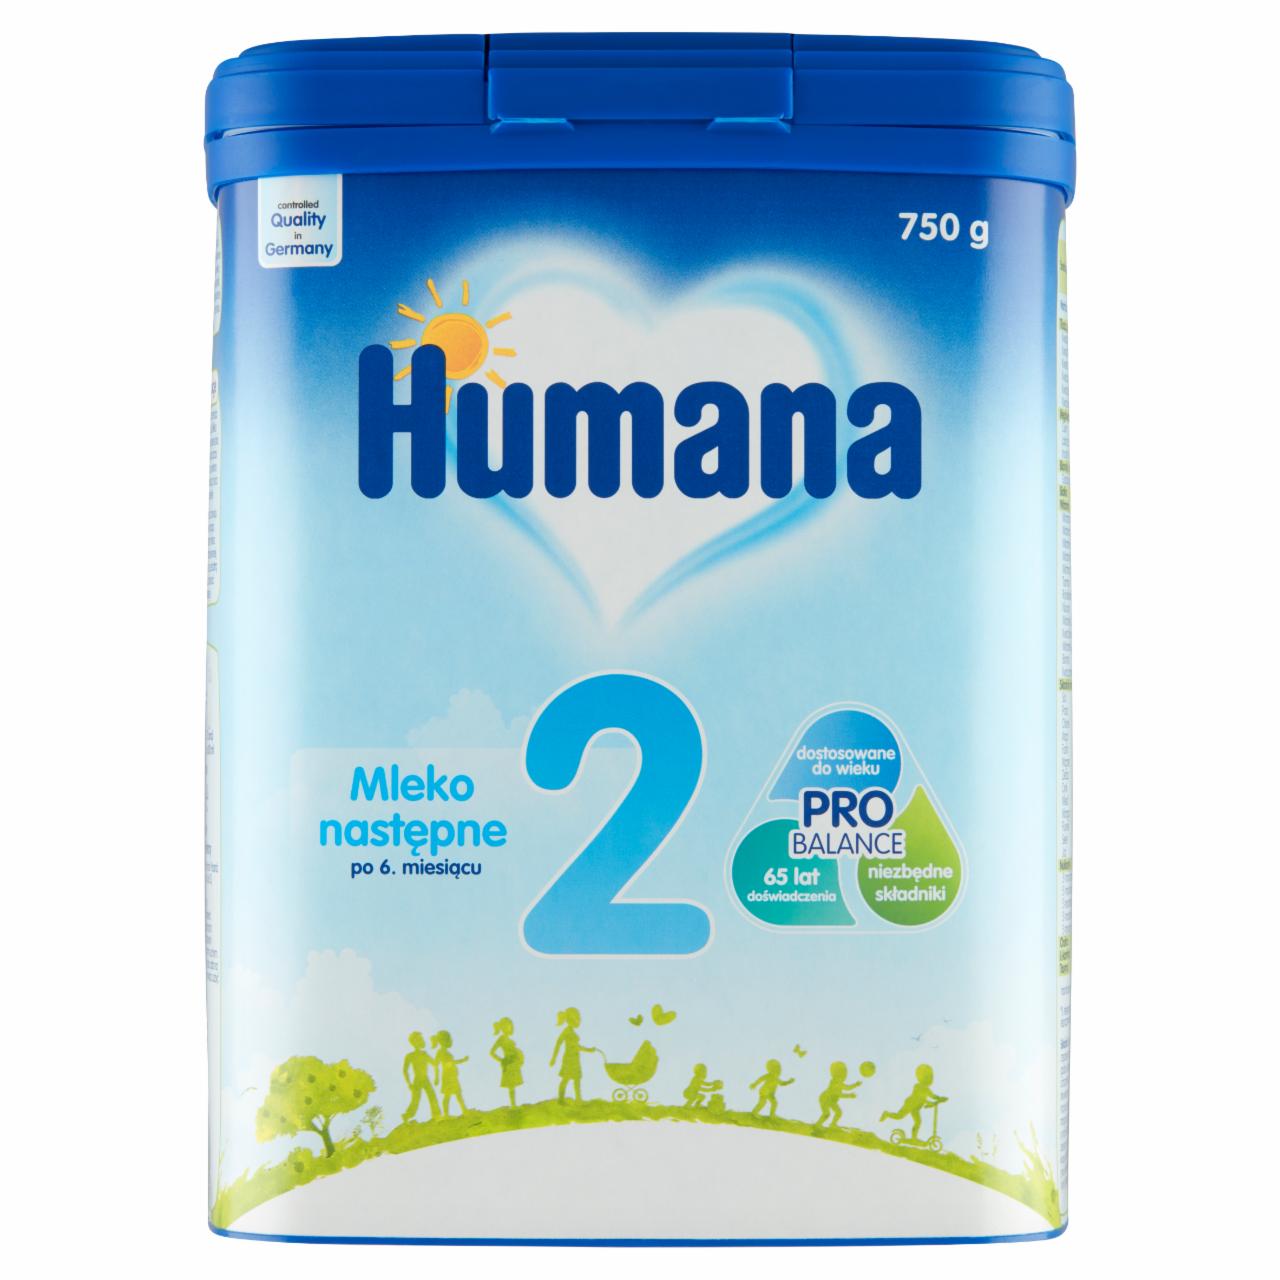 Zdjęcia - Humana 2 Mleko następne po 6. miesiącu 750 g